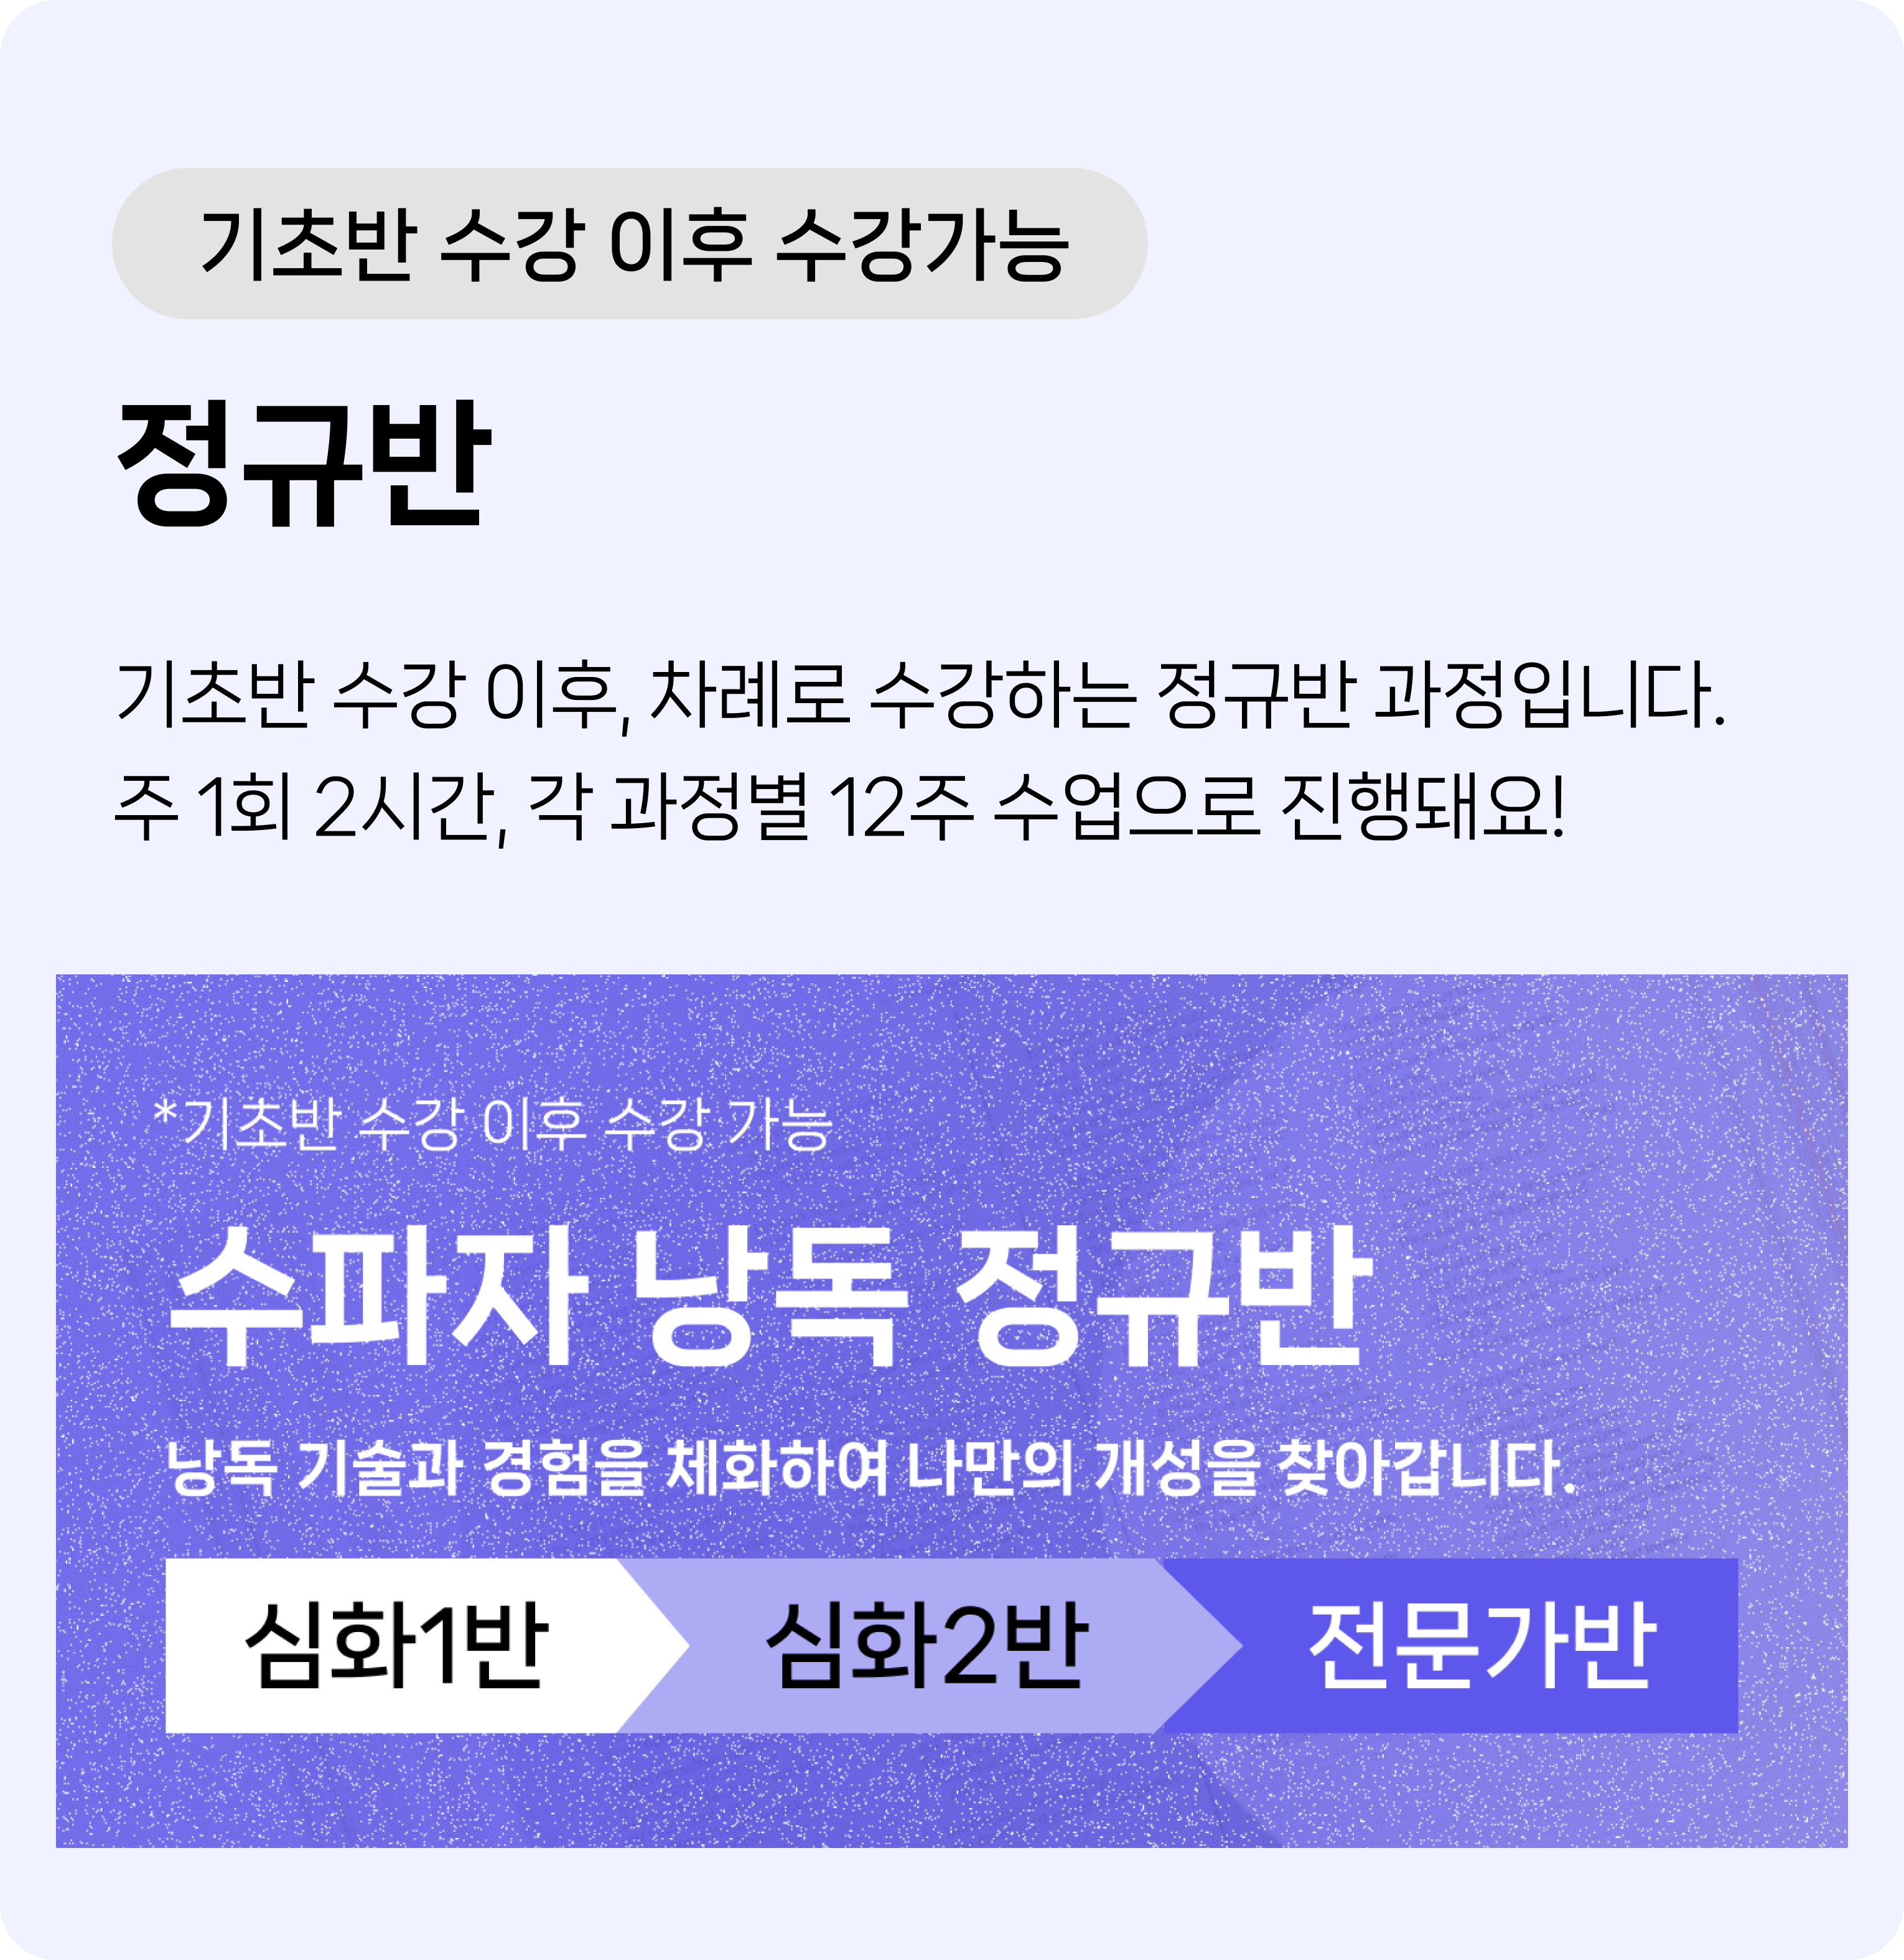 정규반 소개: MBC,KBS 공채 성우 수업. 주 1회, 2시간